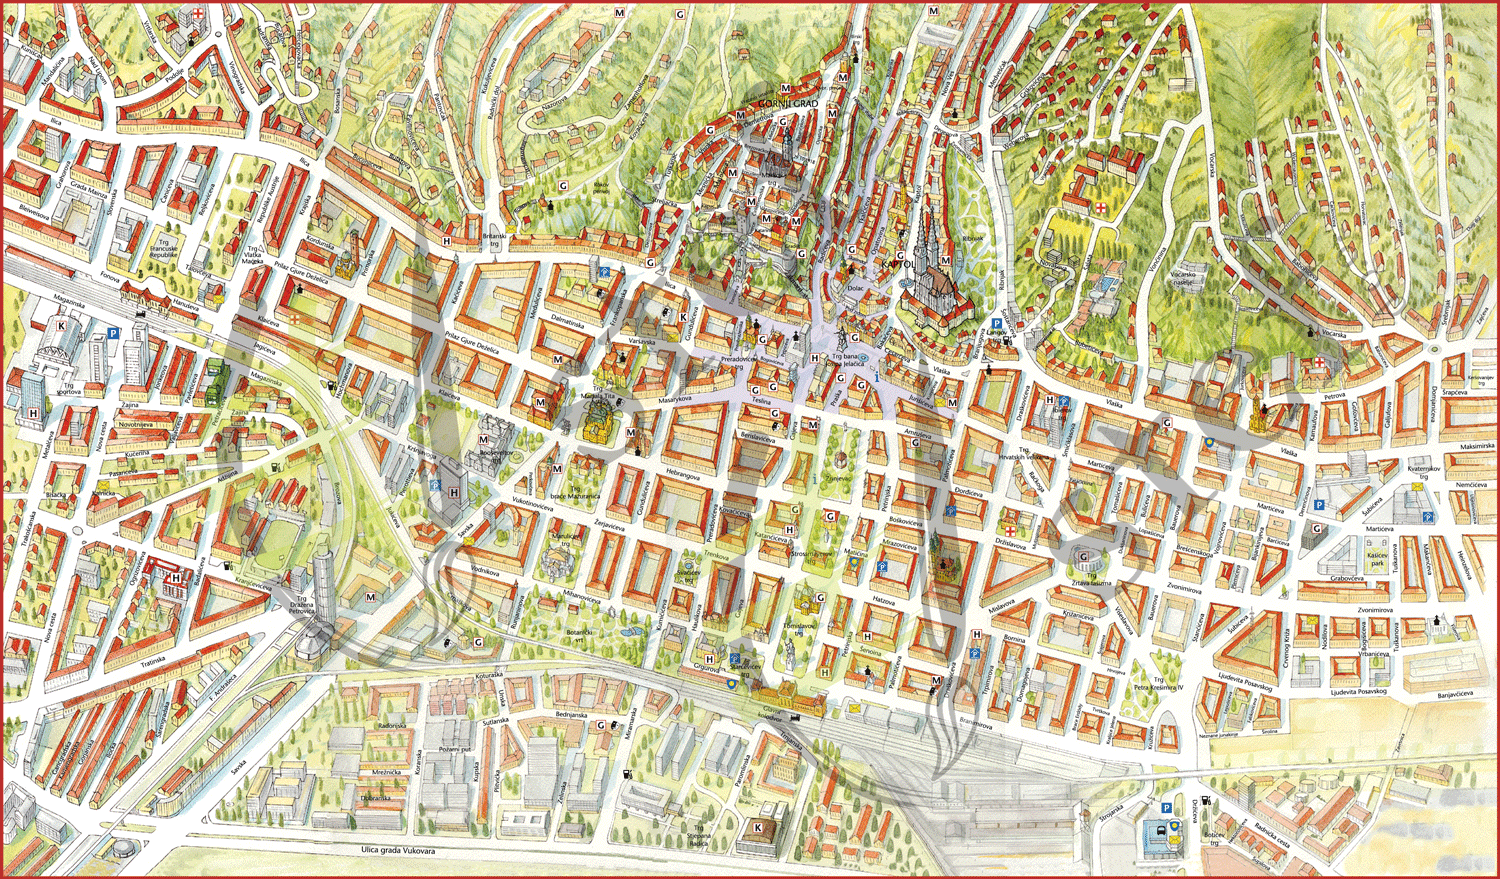 karta grada zagreba satelit Panoramske karte | Slikovne karte karta grada zagreba satelit